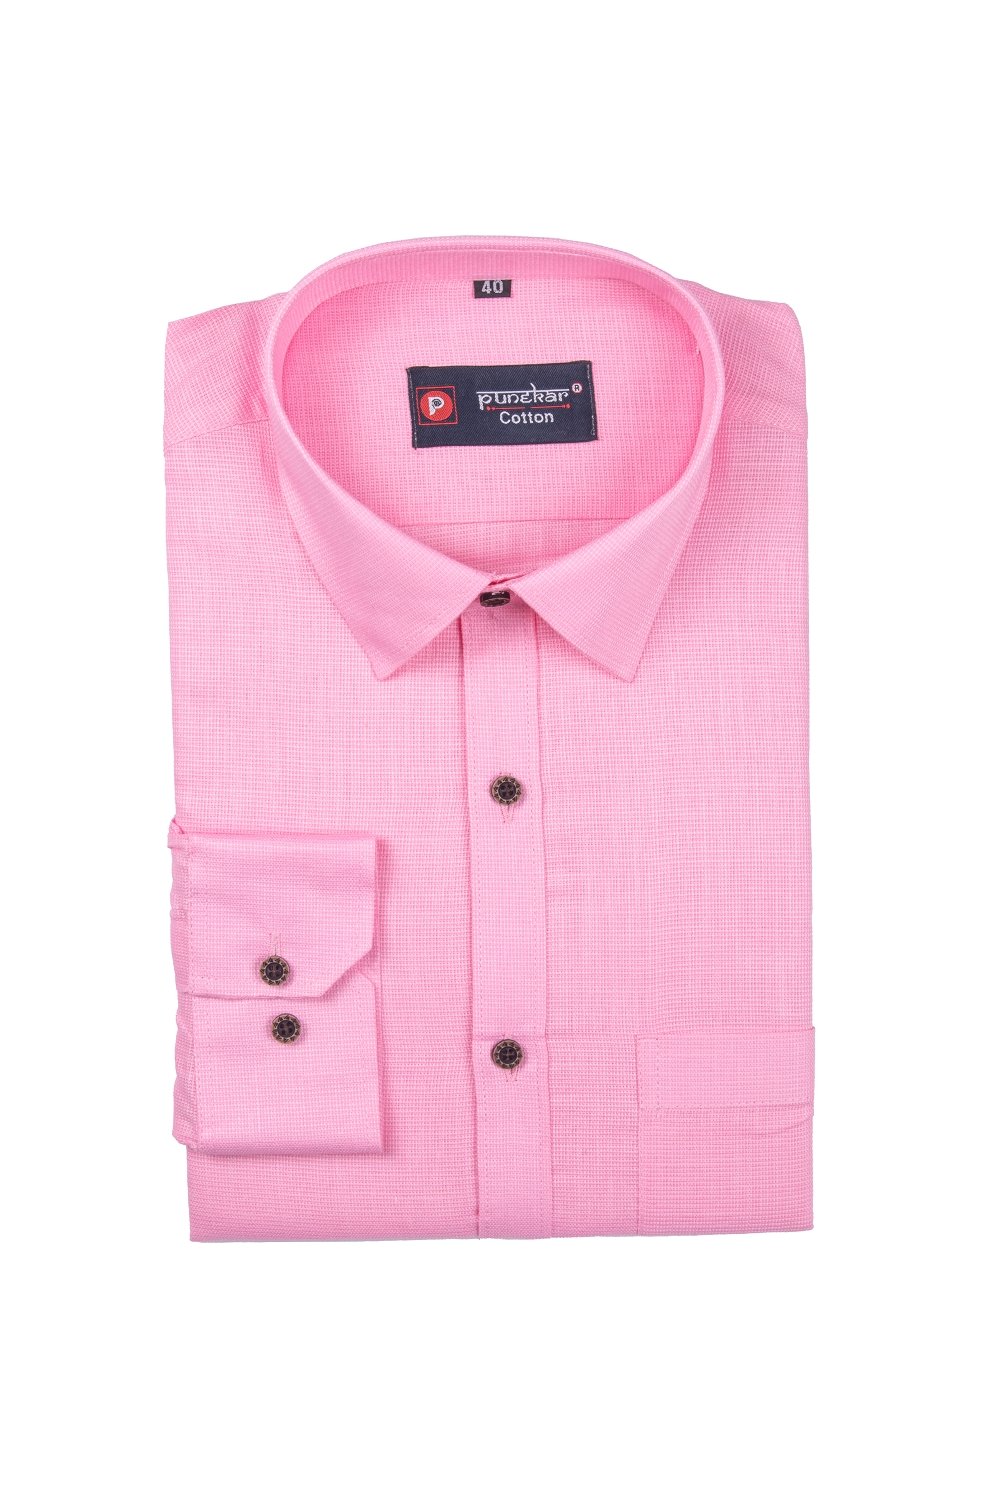 Punekar Cotton Pink Color Silky Linen Cotton Shirt for Men&